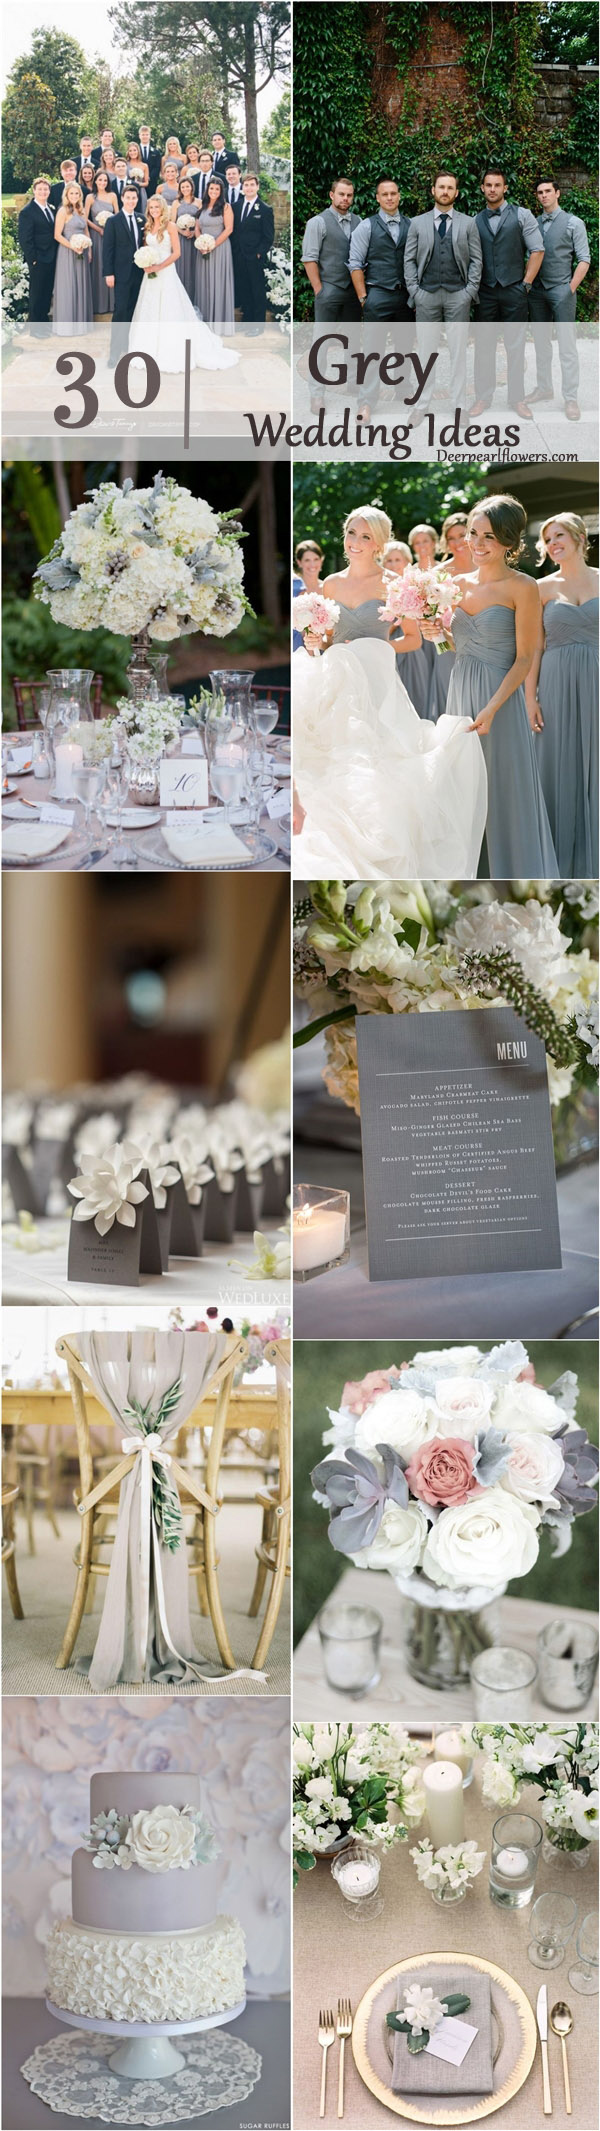 fall wedding ideas- grey wedding color ideas